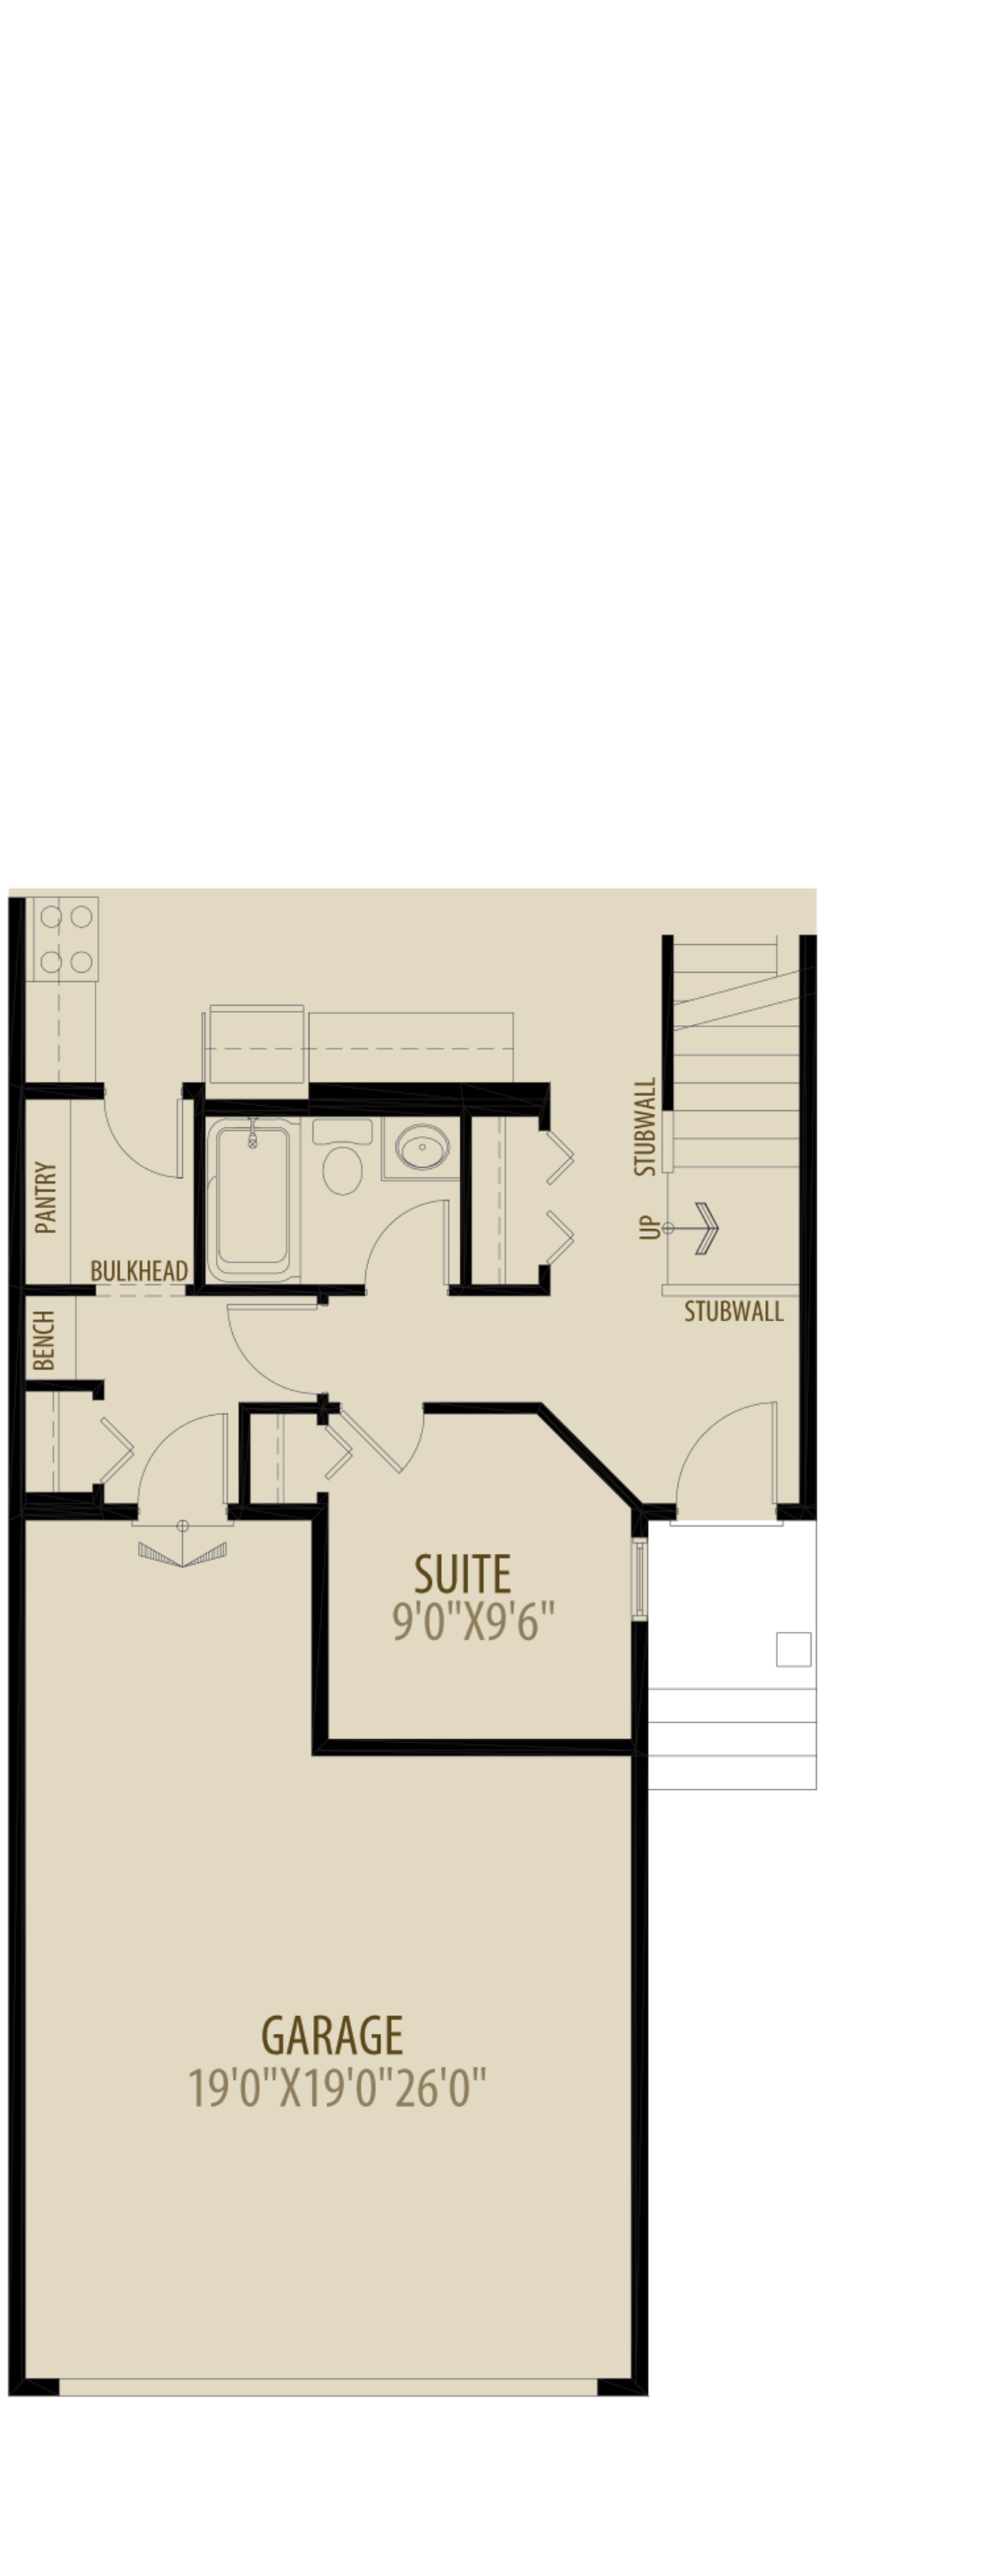 Option 4 Main Floor Suite Adds 70 sq ft